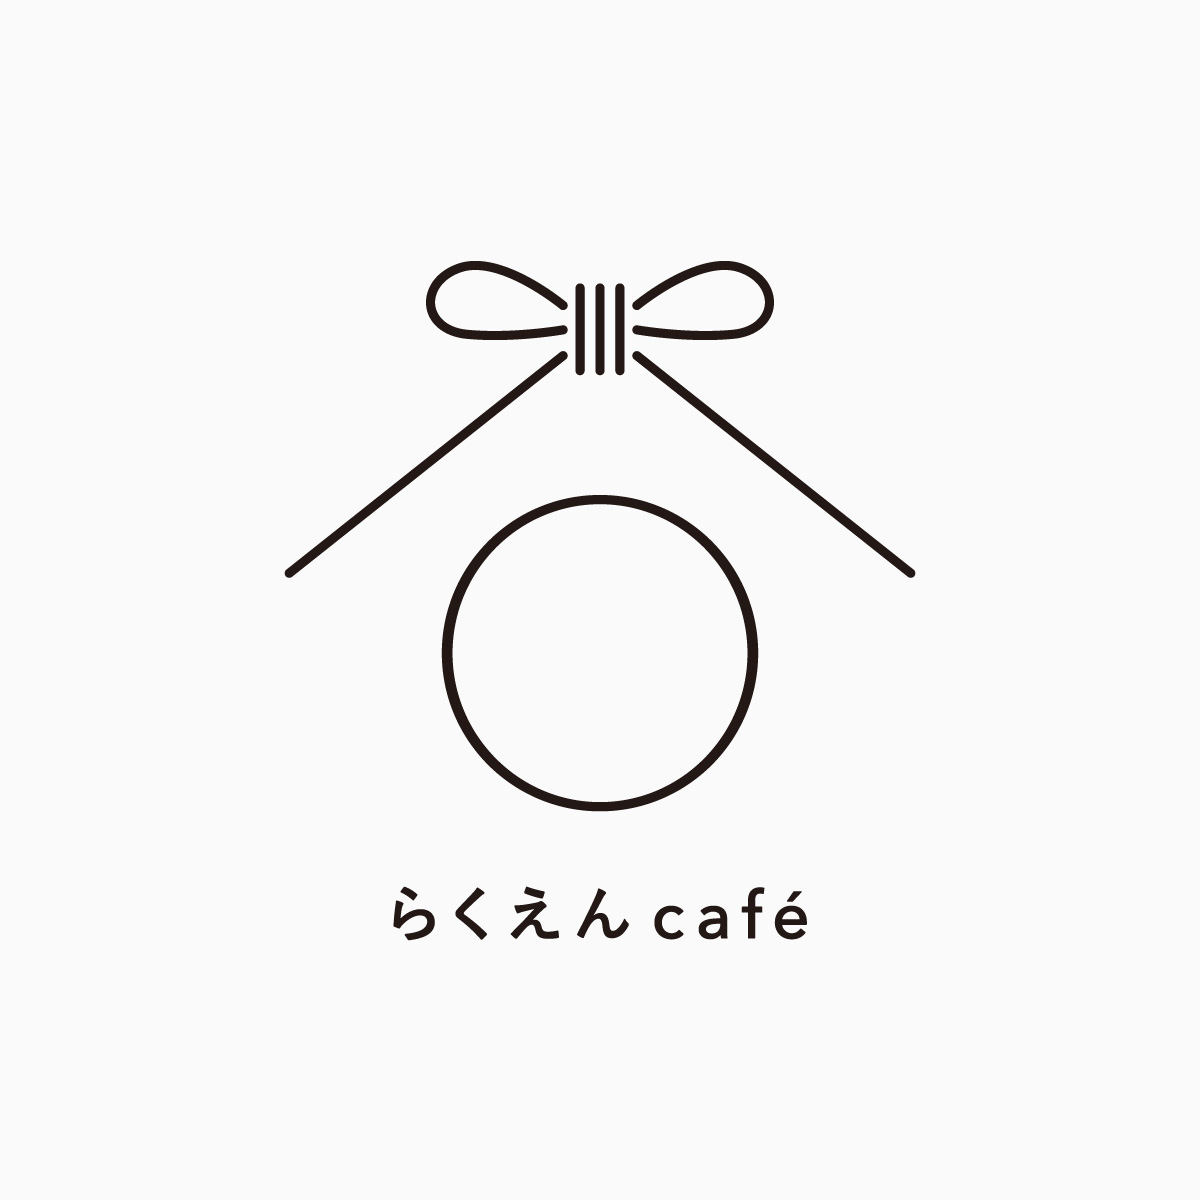 京都の古民家カフェのロゴマーク